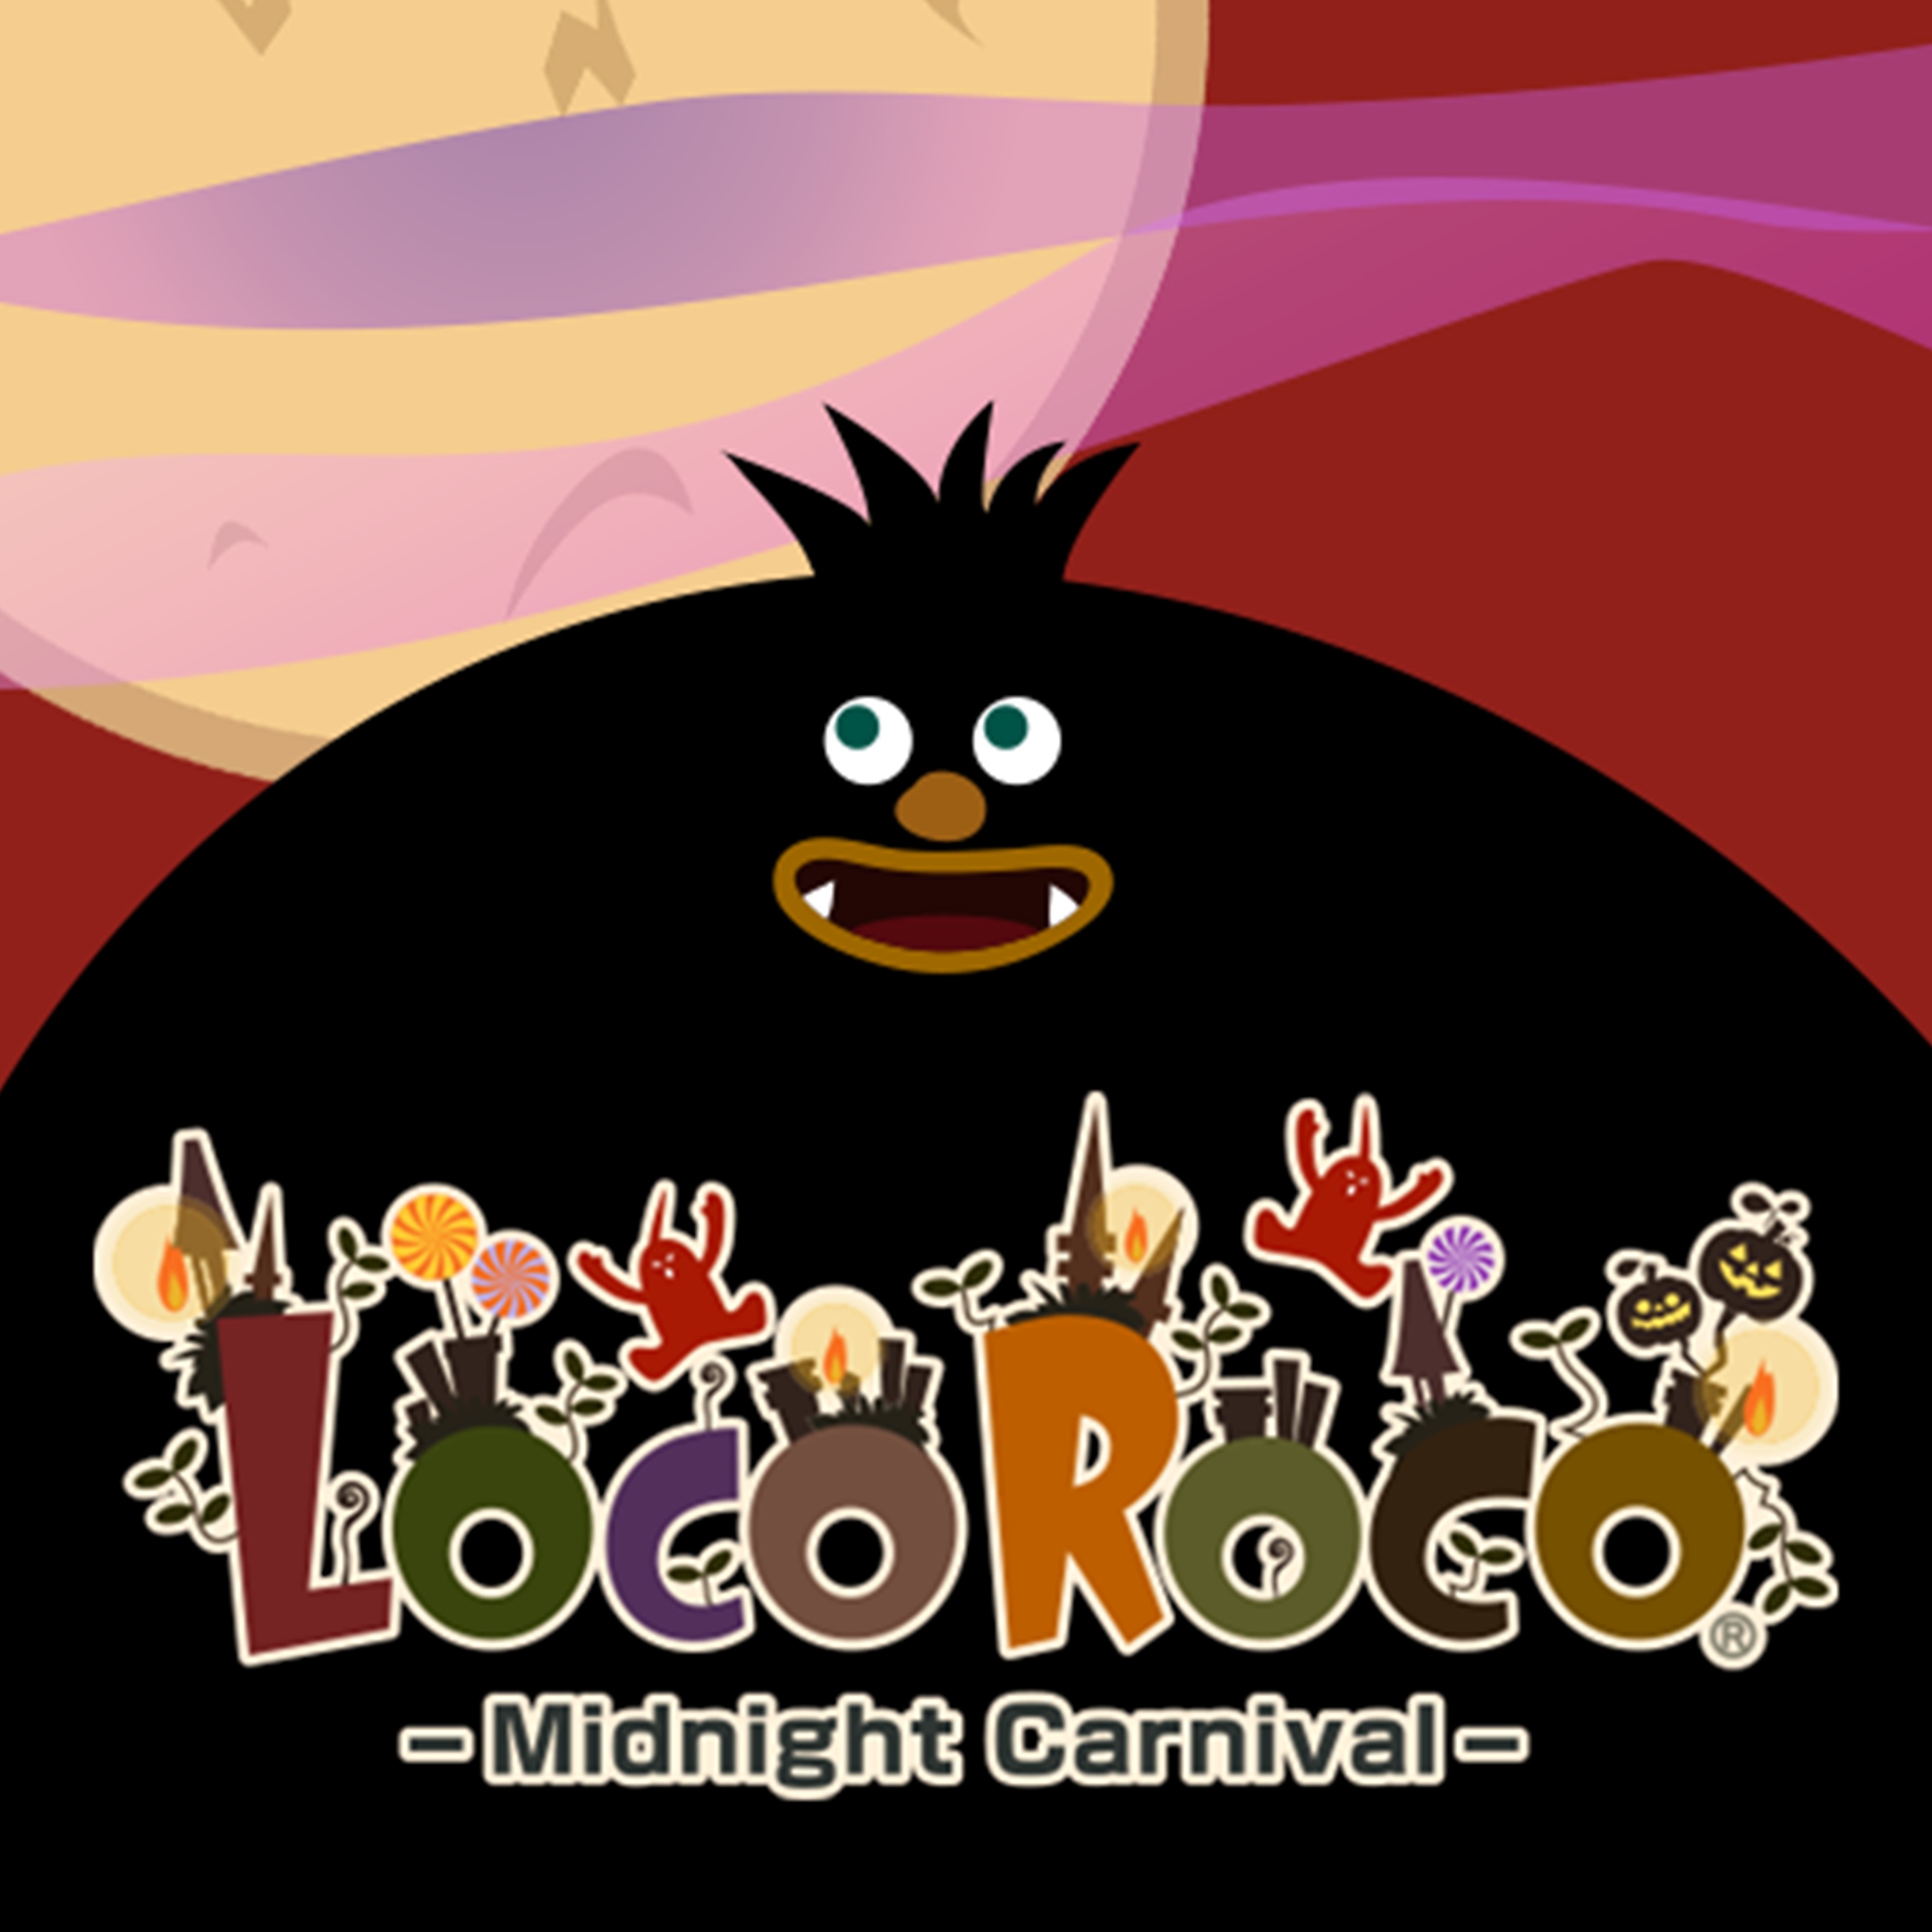 Ilustracija iz igre LocoRoco Midnight carnival prikazuje velikog crnog lika iz crtića